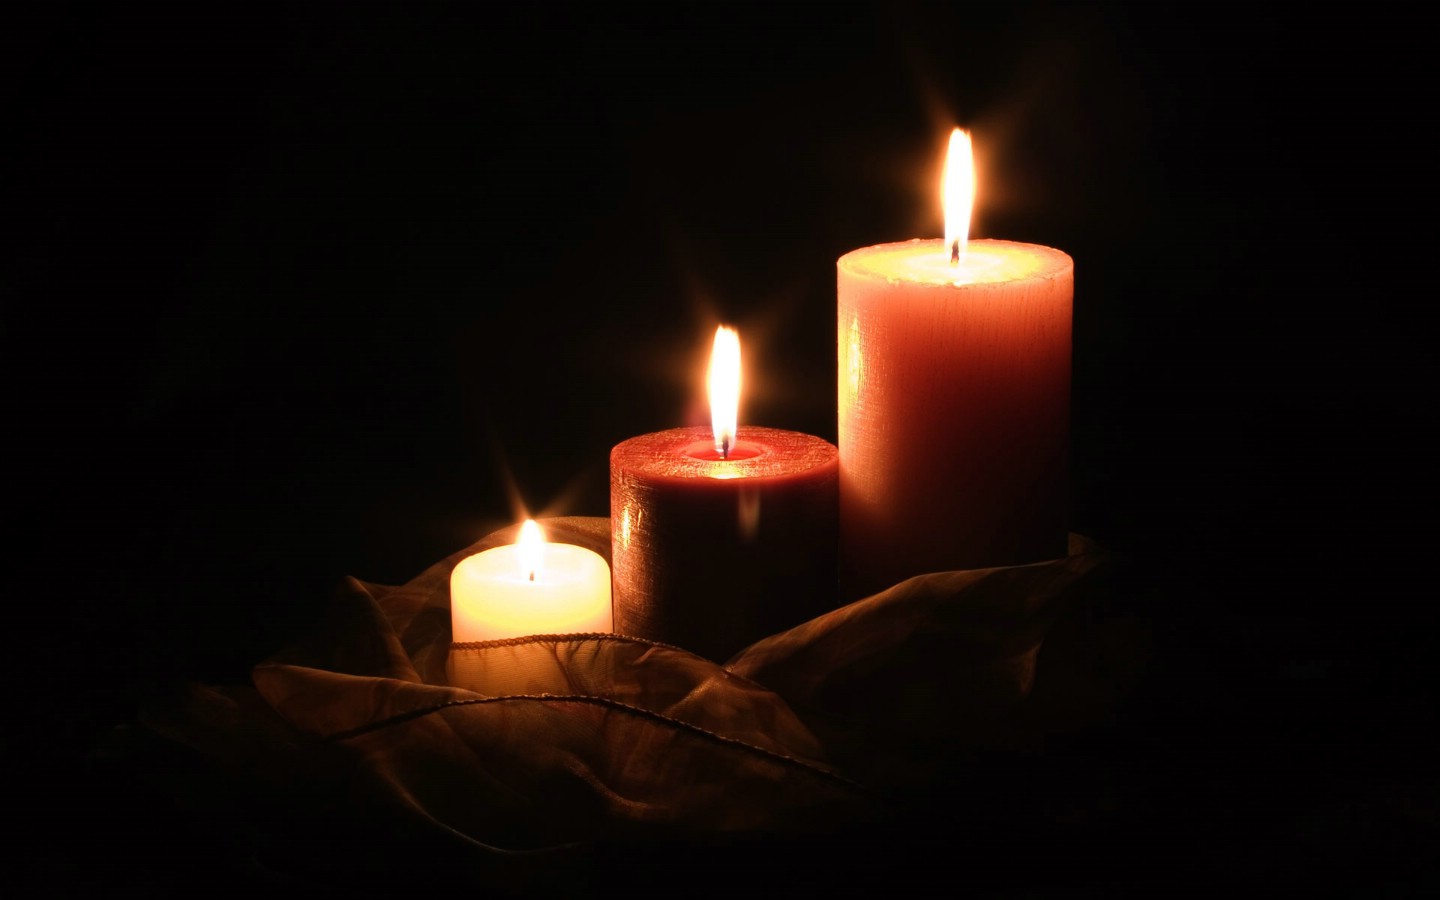 图片素材 : 火焰, 黑暗, 教会, 蜡烛, 灯光, 希望, 葬礼 3456x2304 - - 1283537 - 素材中国, 高清壁纸 ...